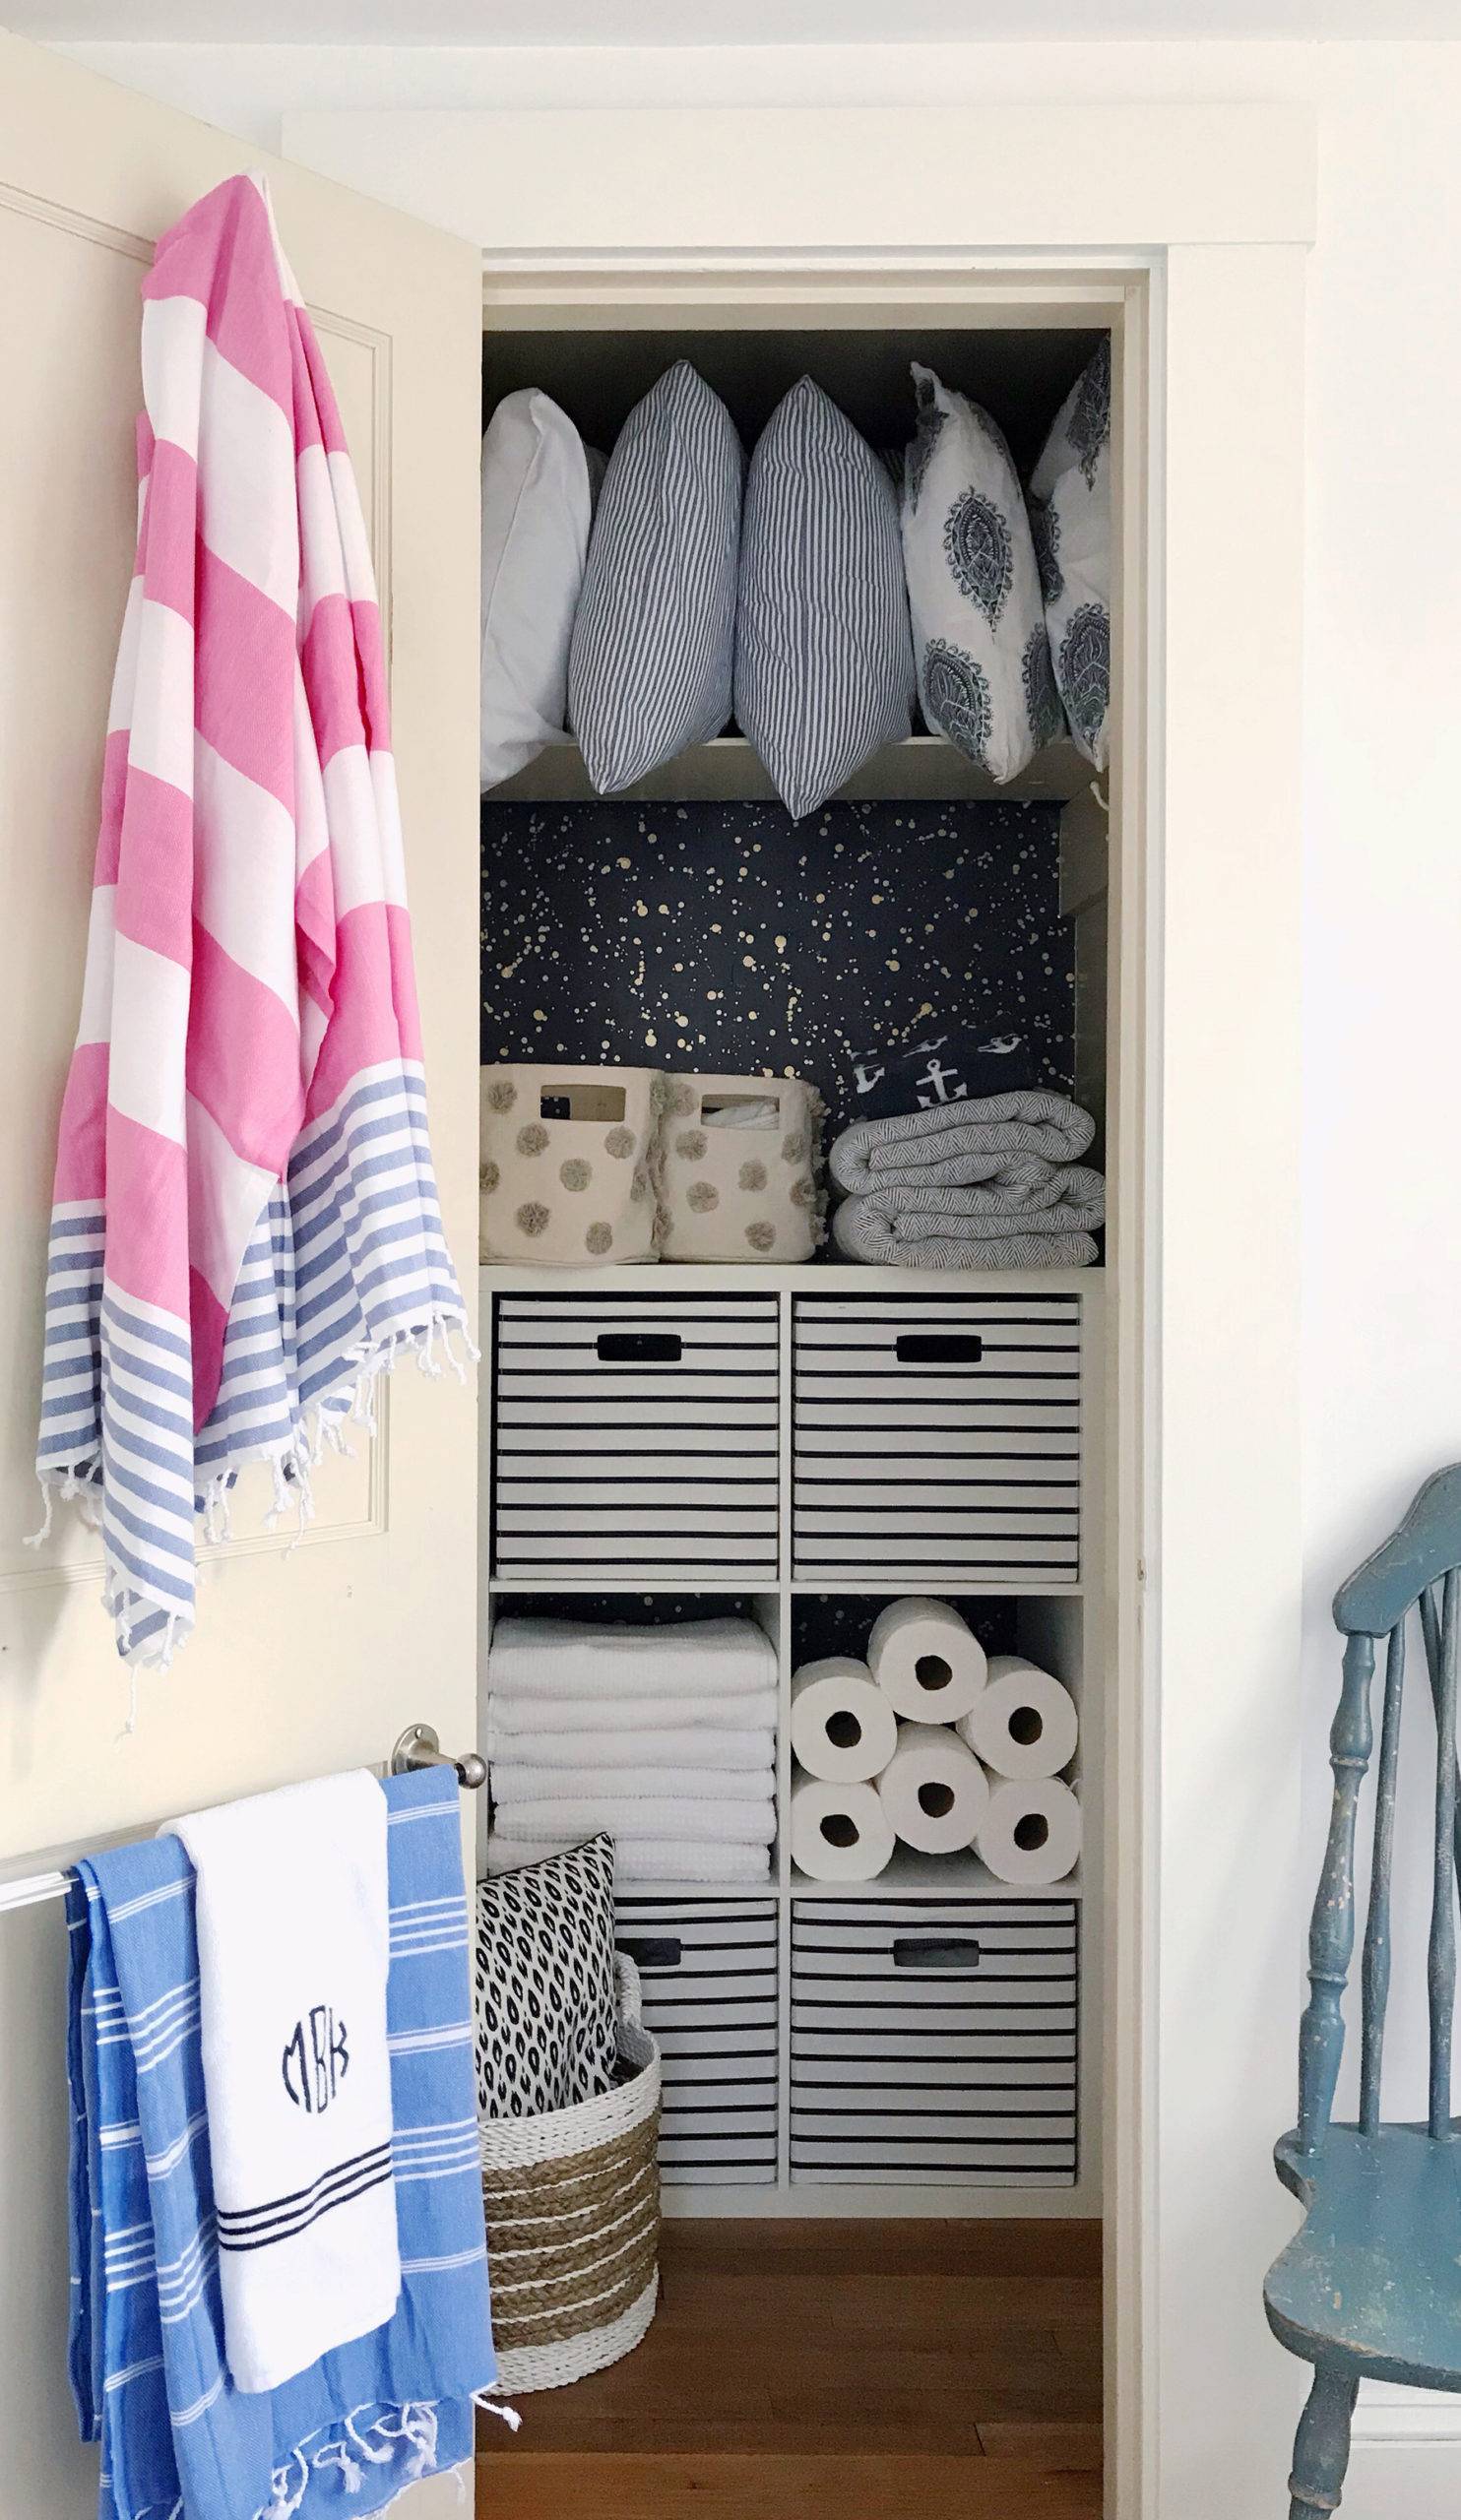 How to organize a utility closet